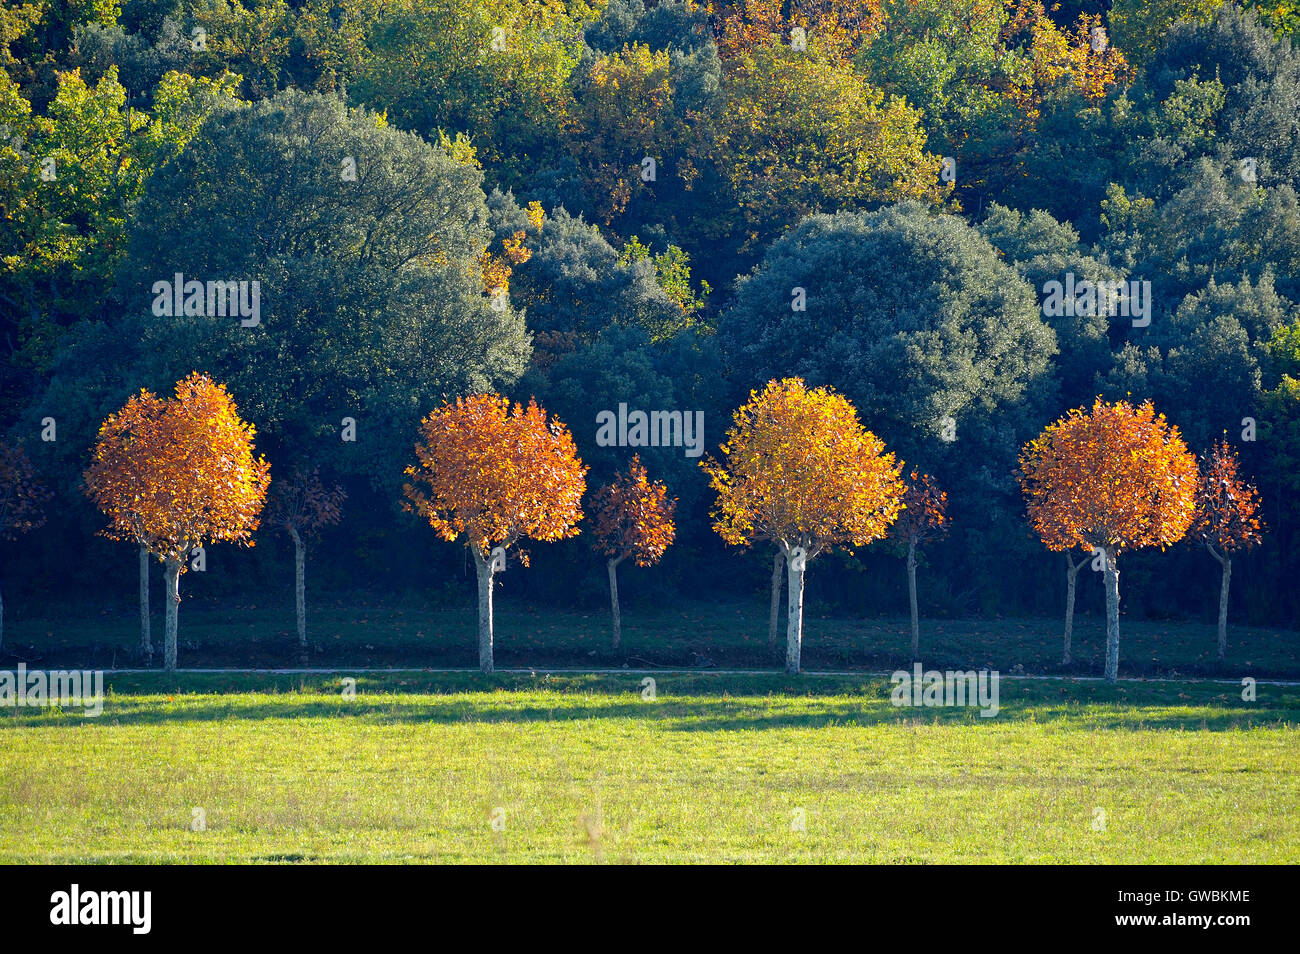 Paysage en automne avec un alignement d'arbres avec des couleurs solides et d'une manière qui passe entre eux. Banque D'Images